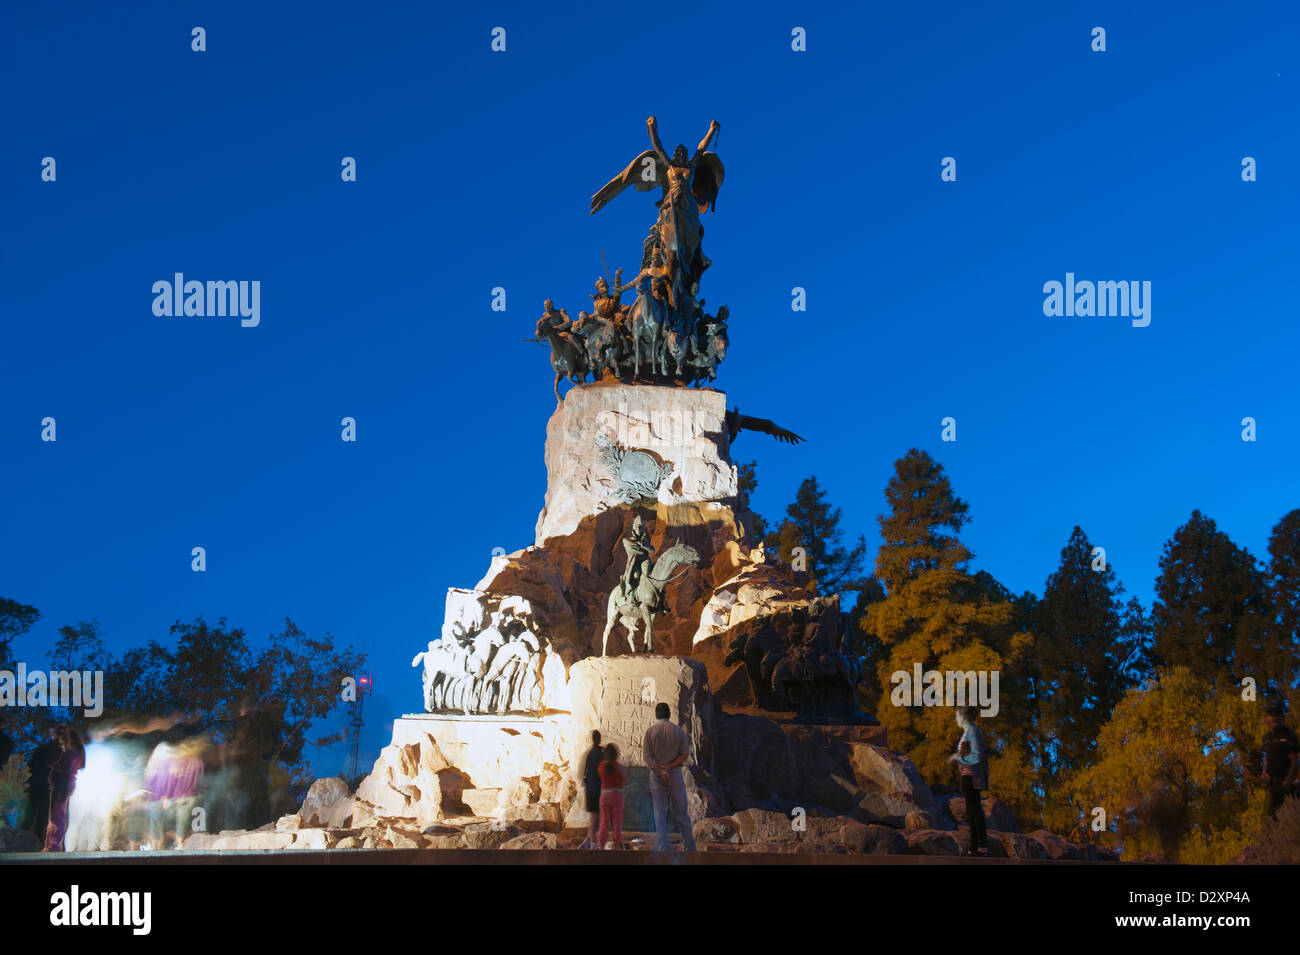 Cerro de la Gloria statue, monument honouring San Martin, Parque General San Martin, Mendoza, Argentina, South America Stock Photo